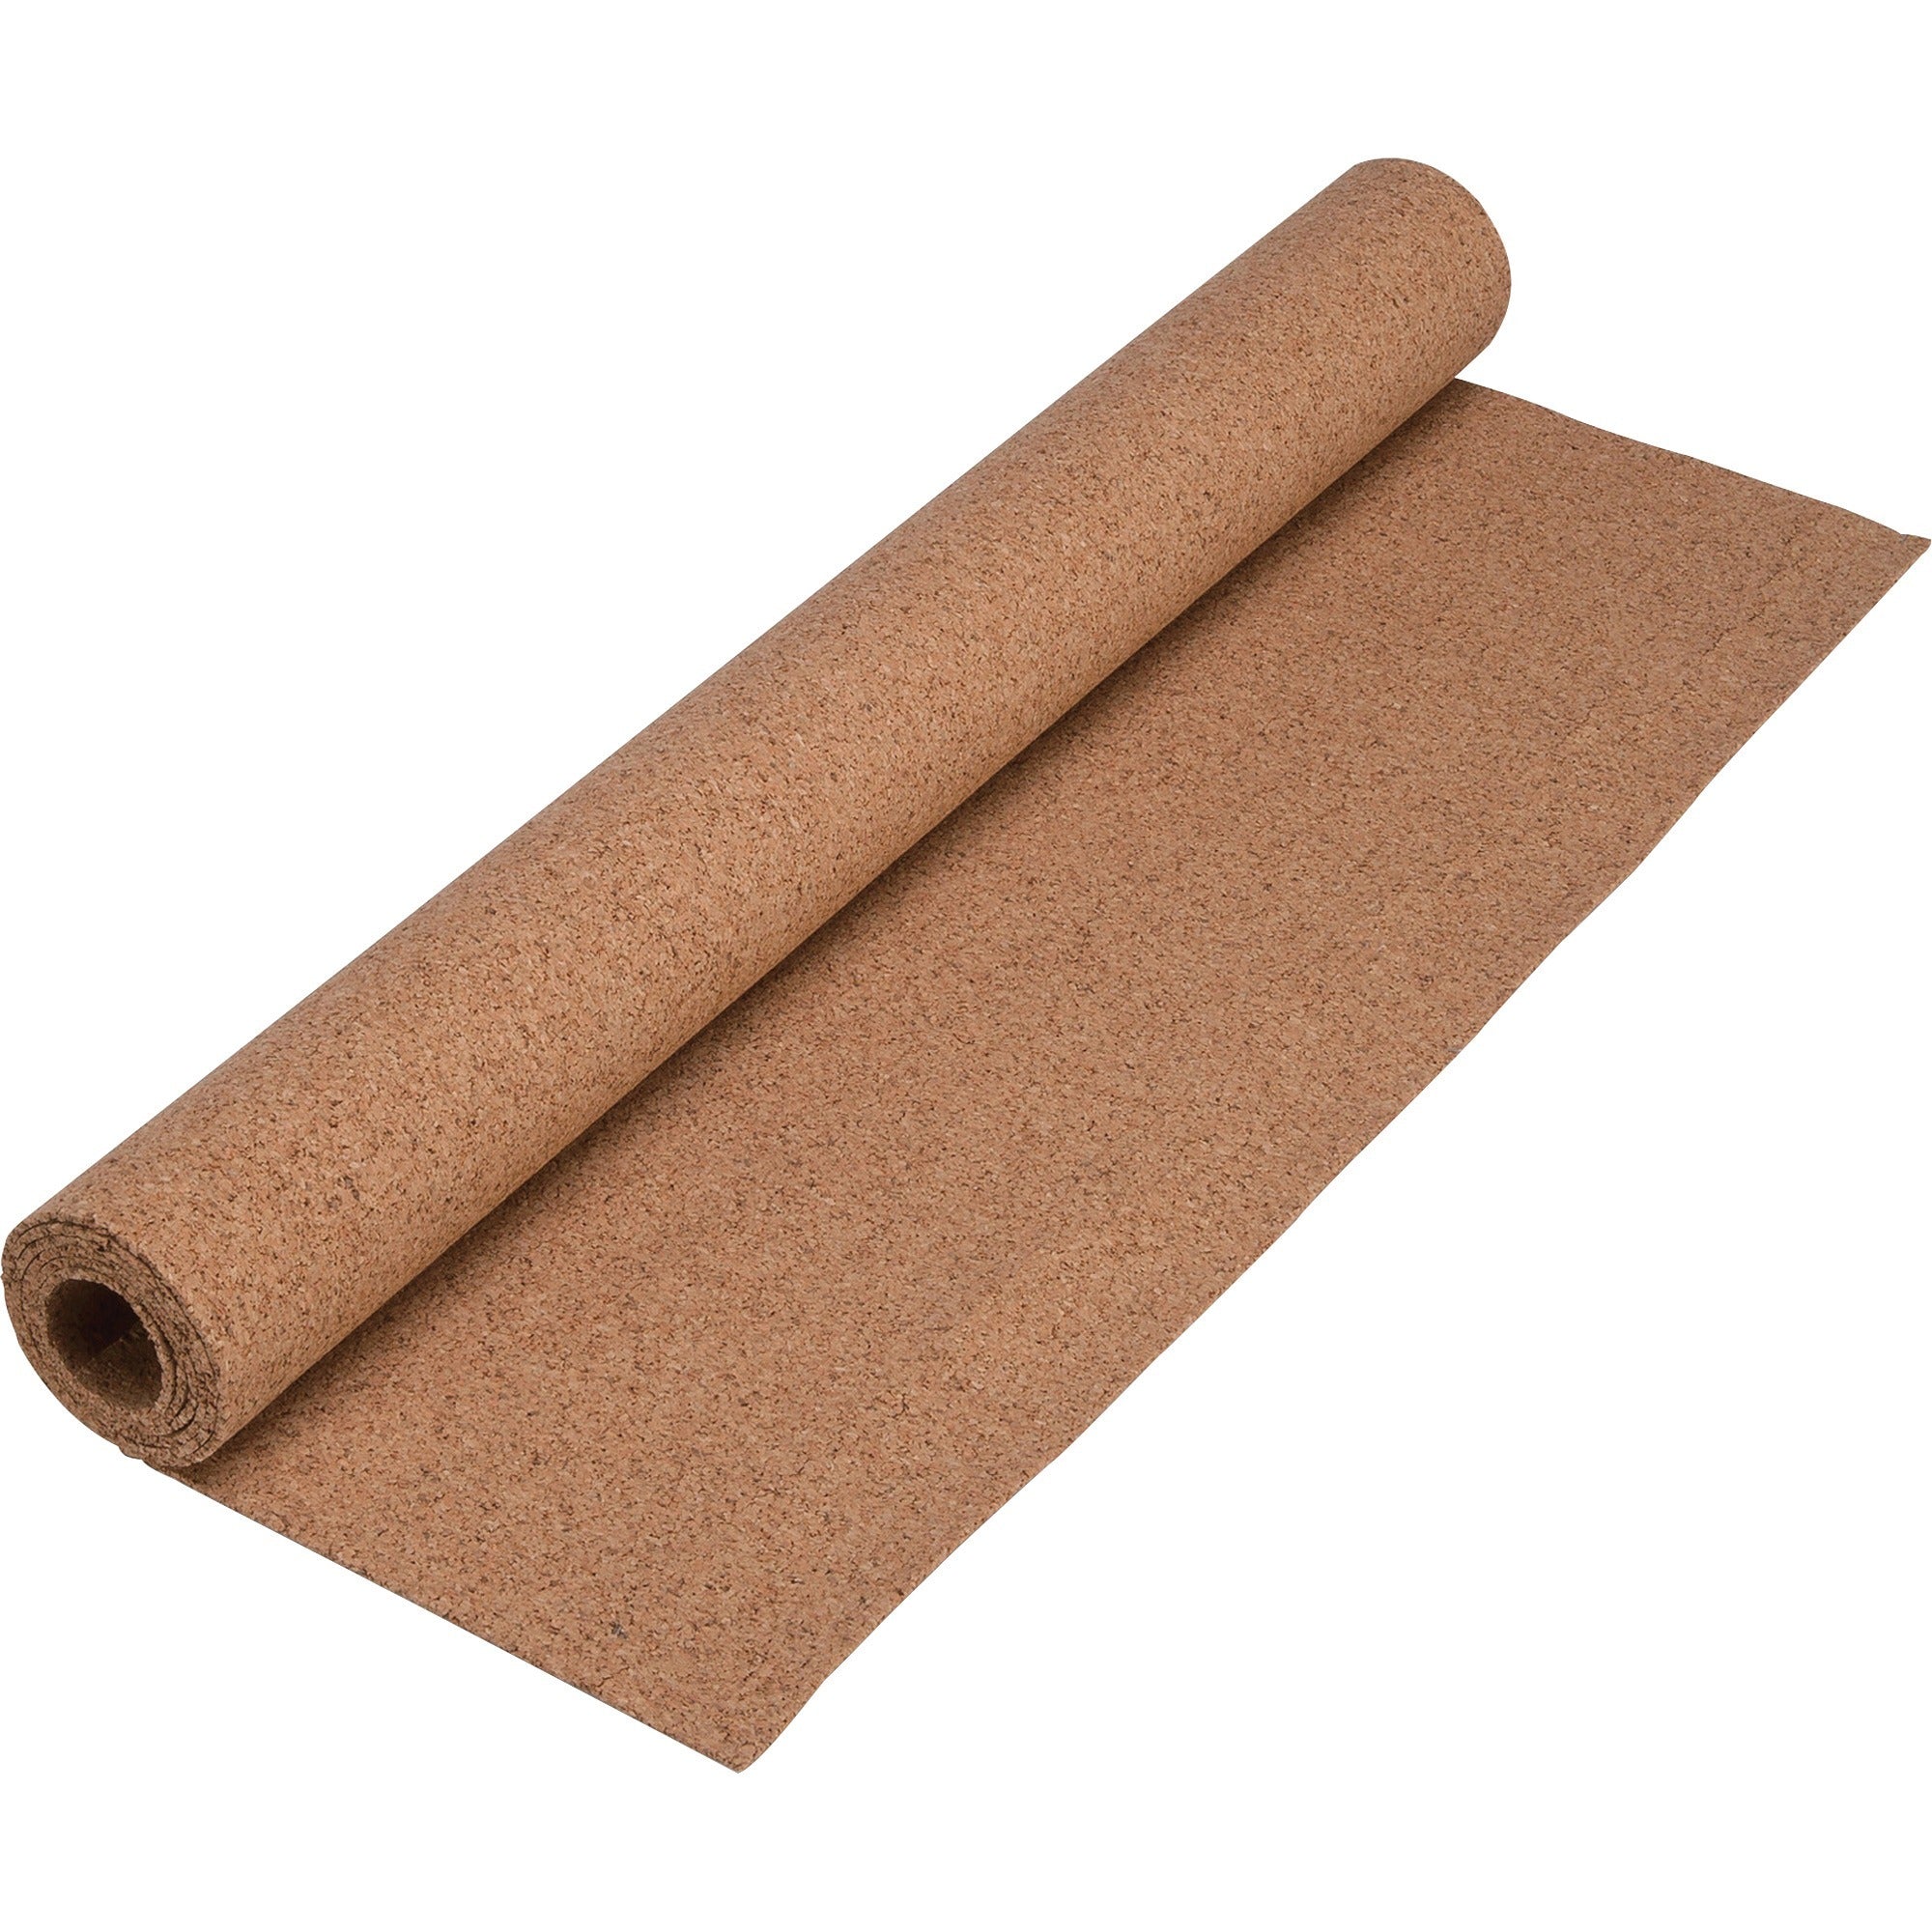 Lorell Natural Cork Roll - 48" Height x 24" Width - Brown Cork Surface - 1 Each - 